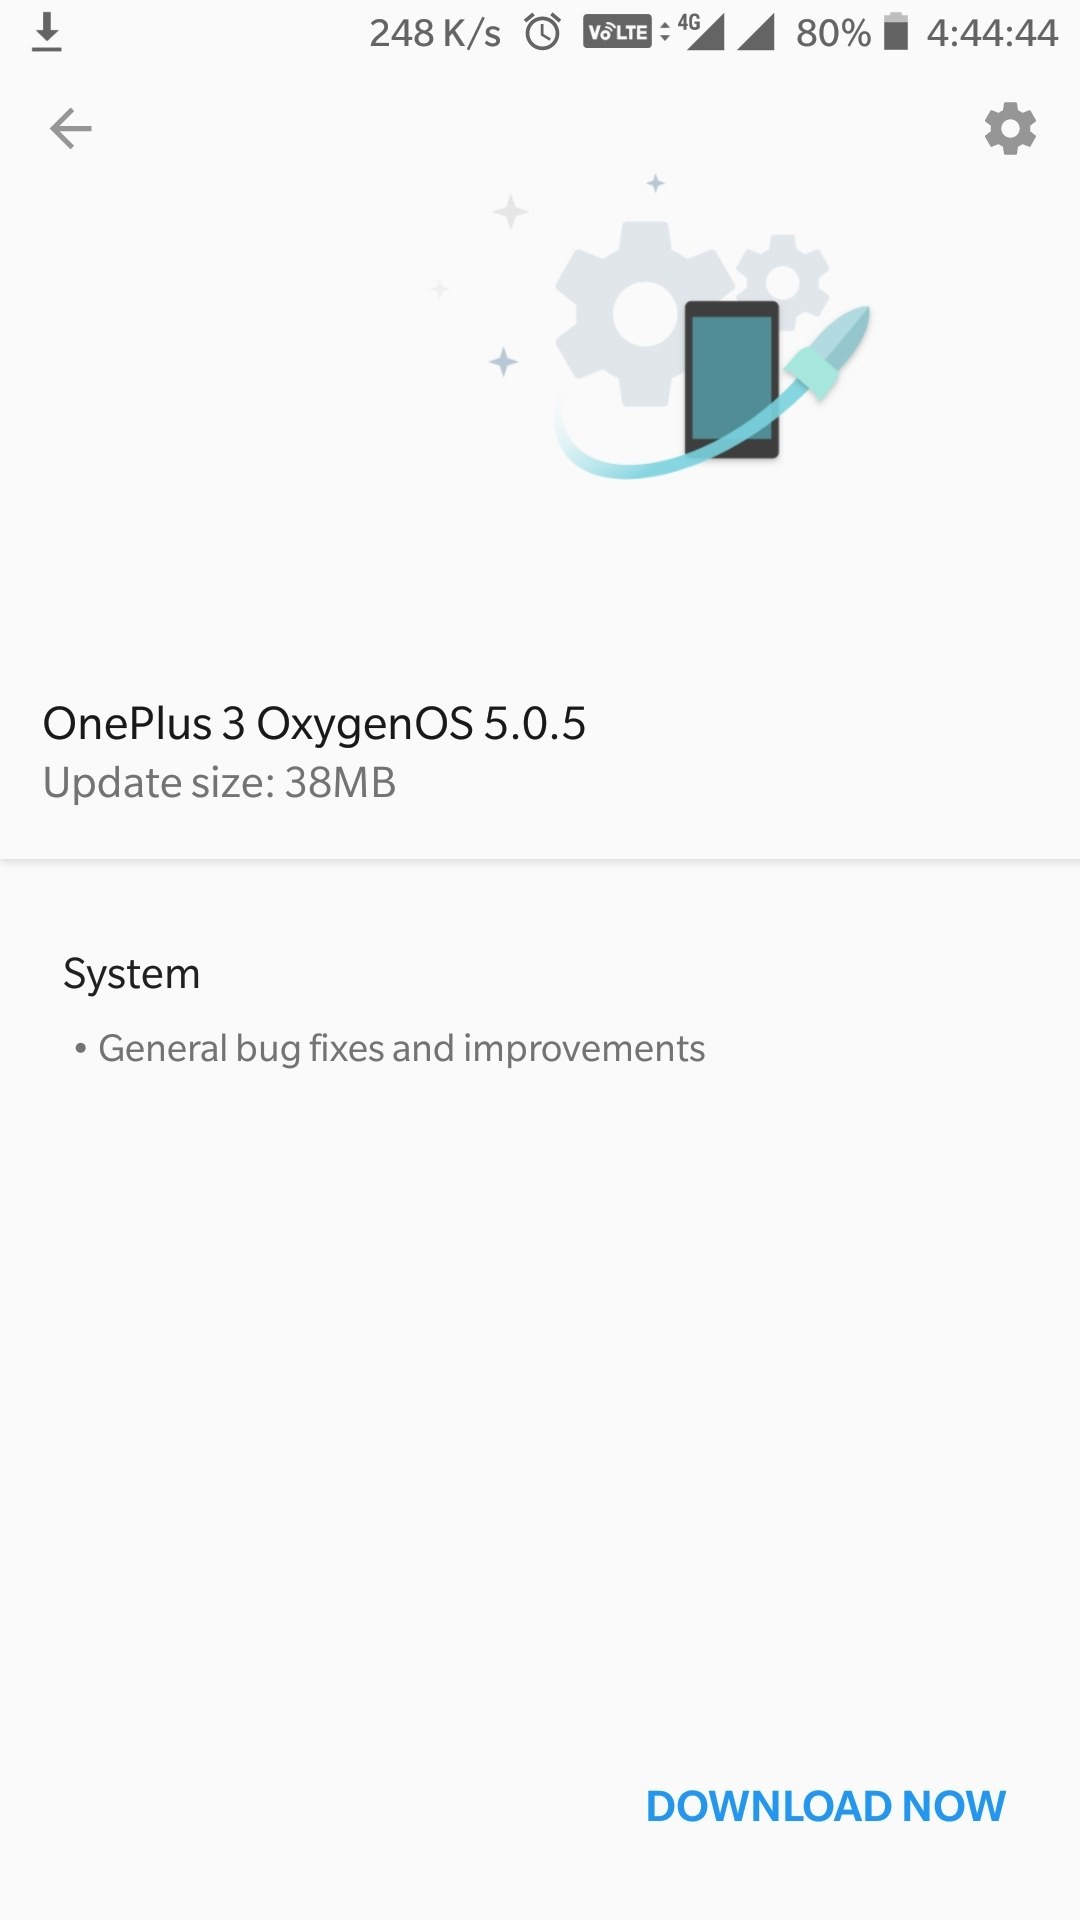 La actualización de OxygenOS 5.0.5 está activada para OnePlus 3 y 3T, las actualizaciones de Android Pie en los próximos meses